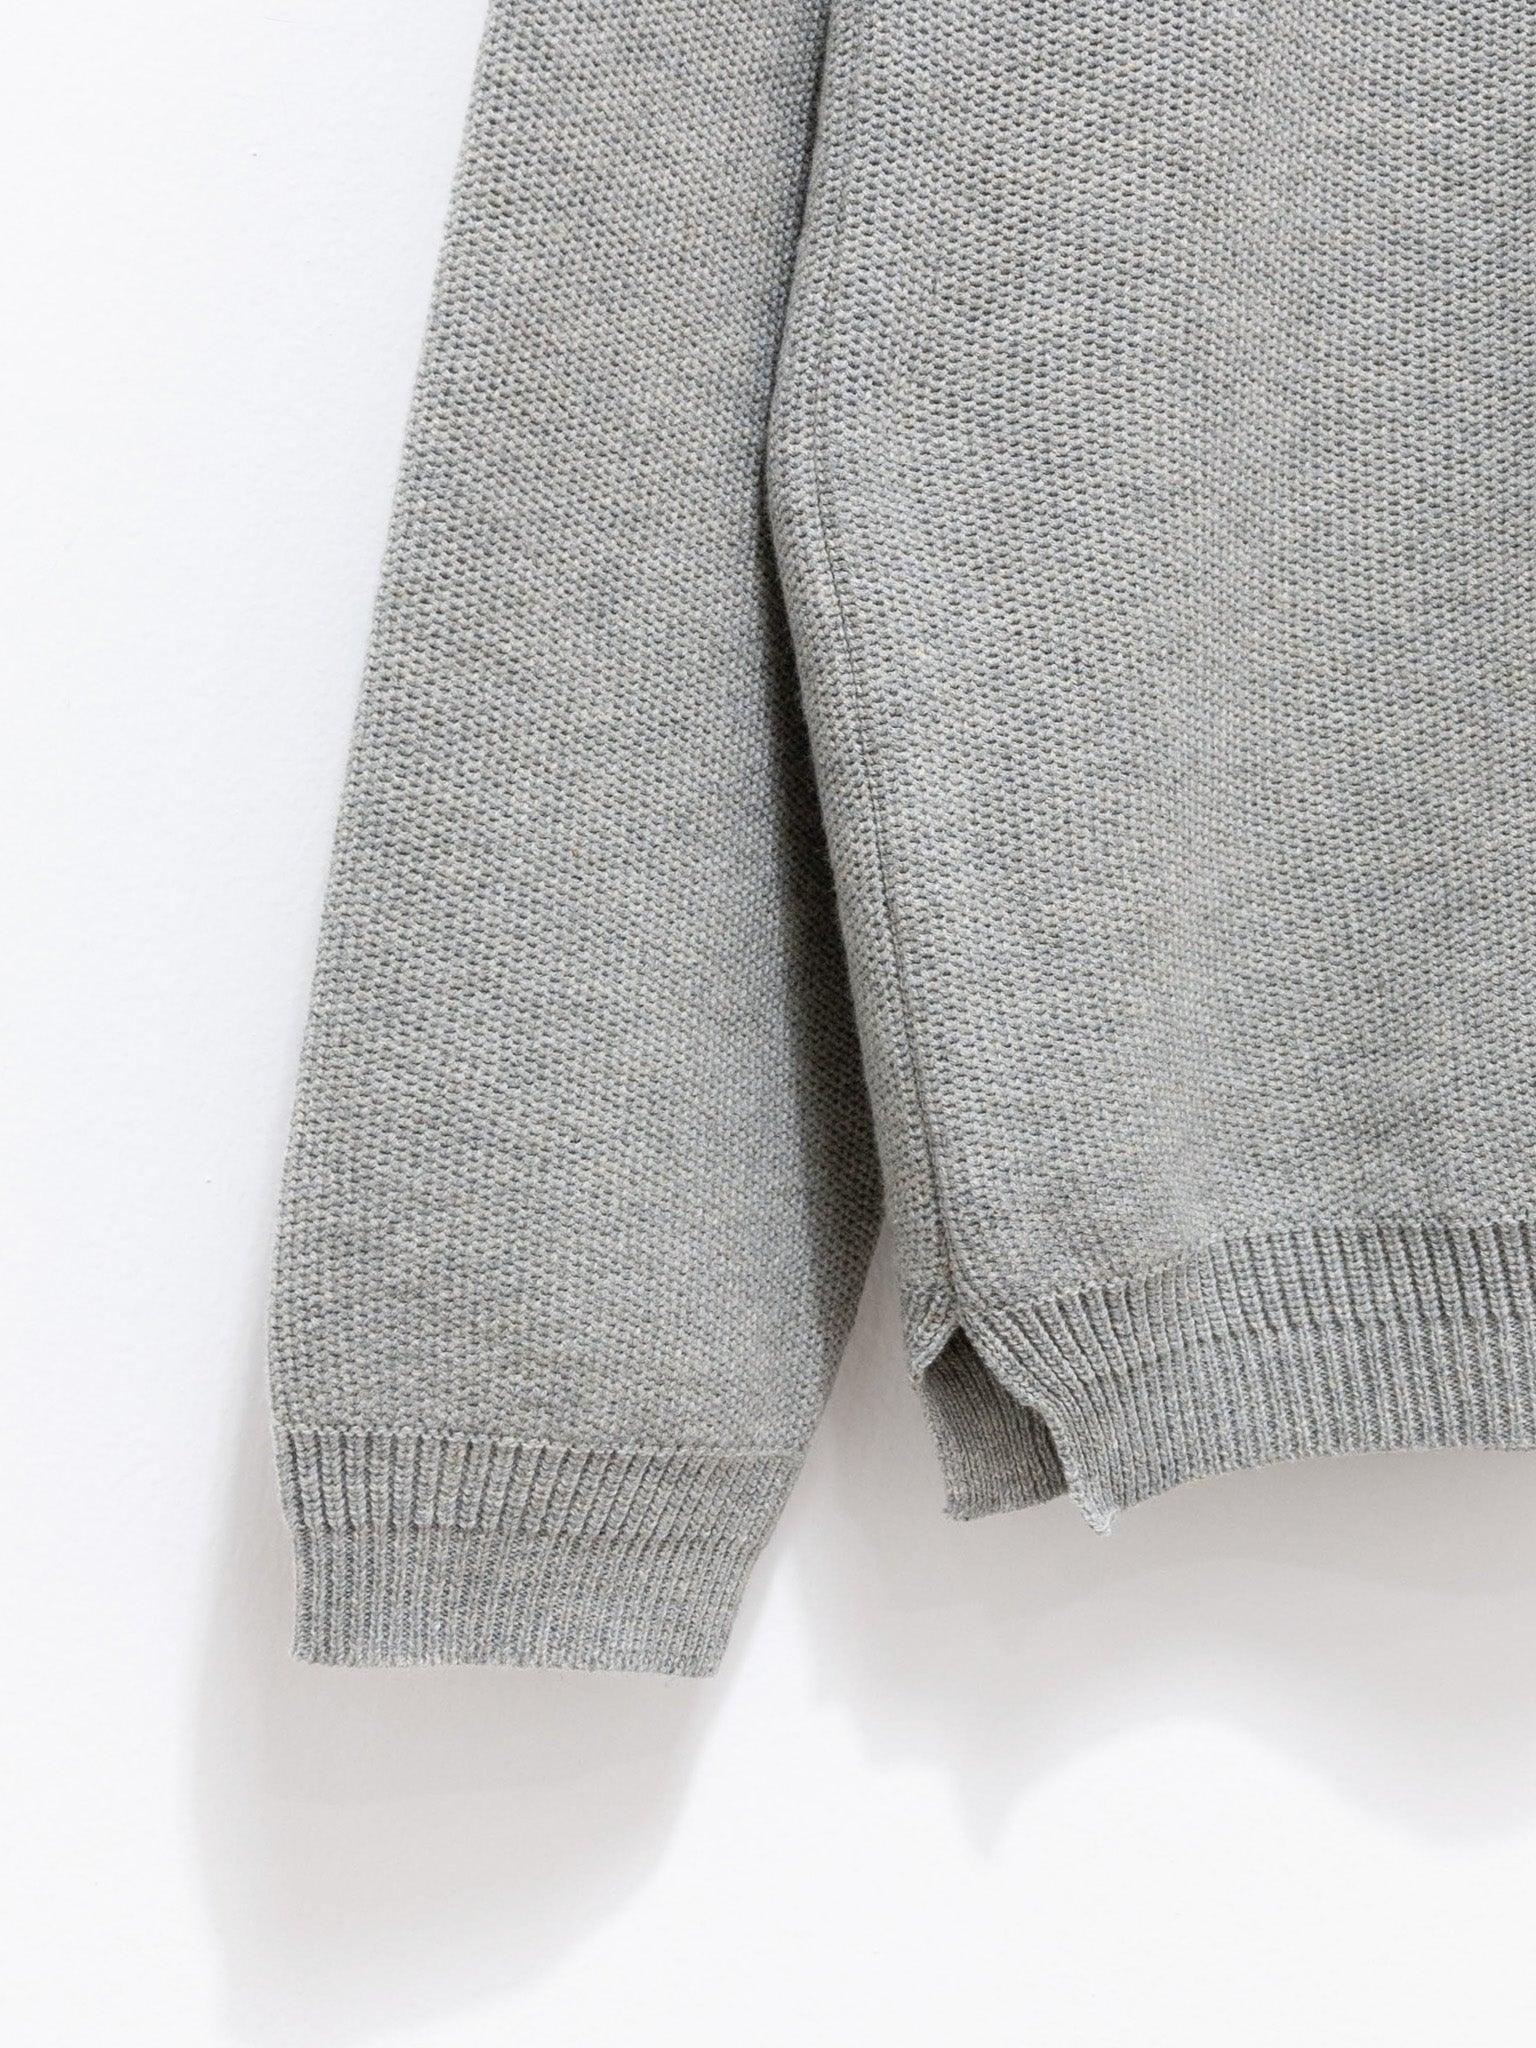 Namu Shop - Fujito L/S Knit T-Shirt - Light Gray